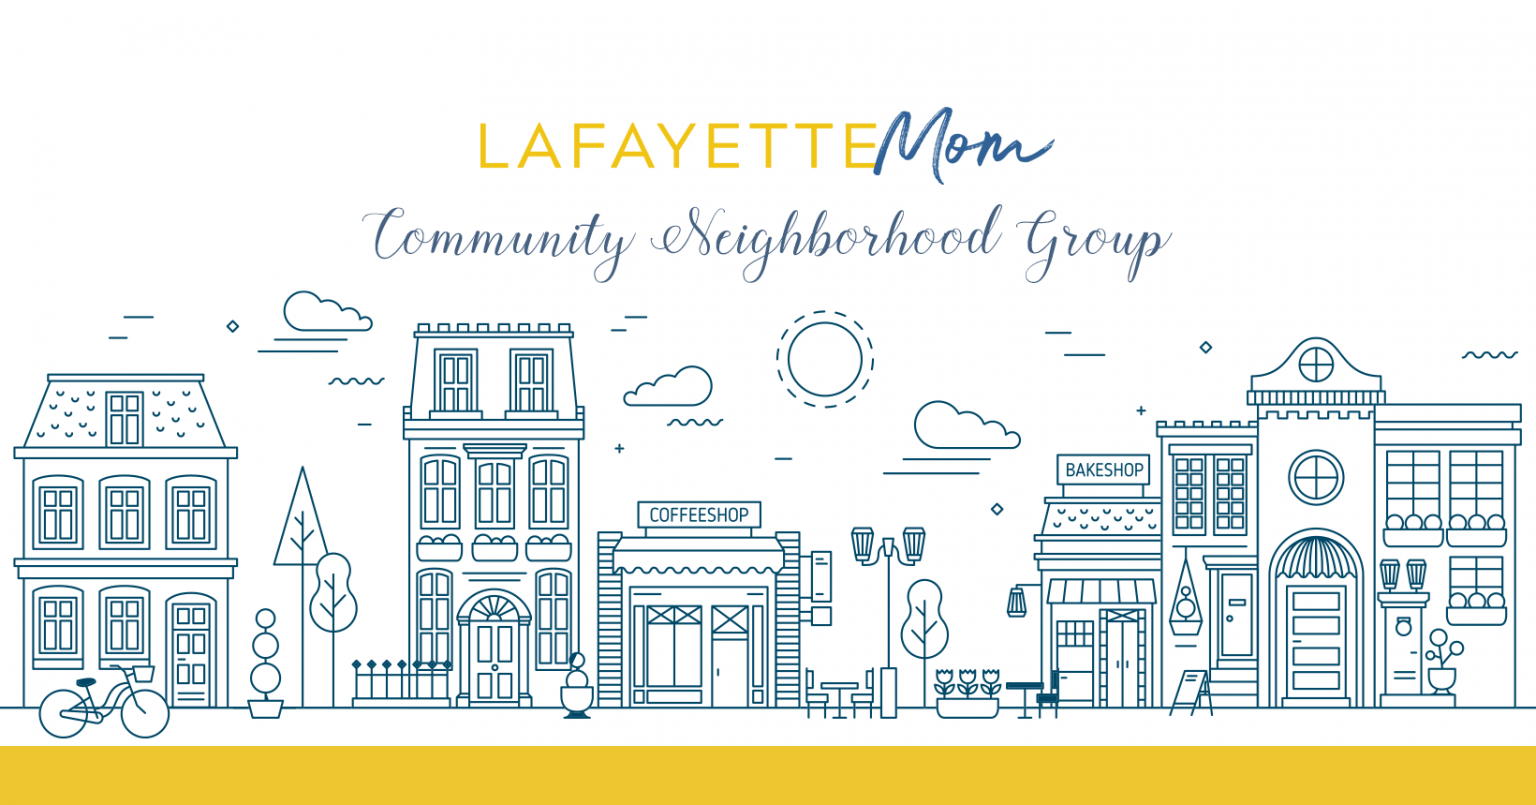 Neighborhood groups in Lafayette Louisiana